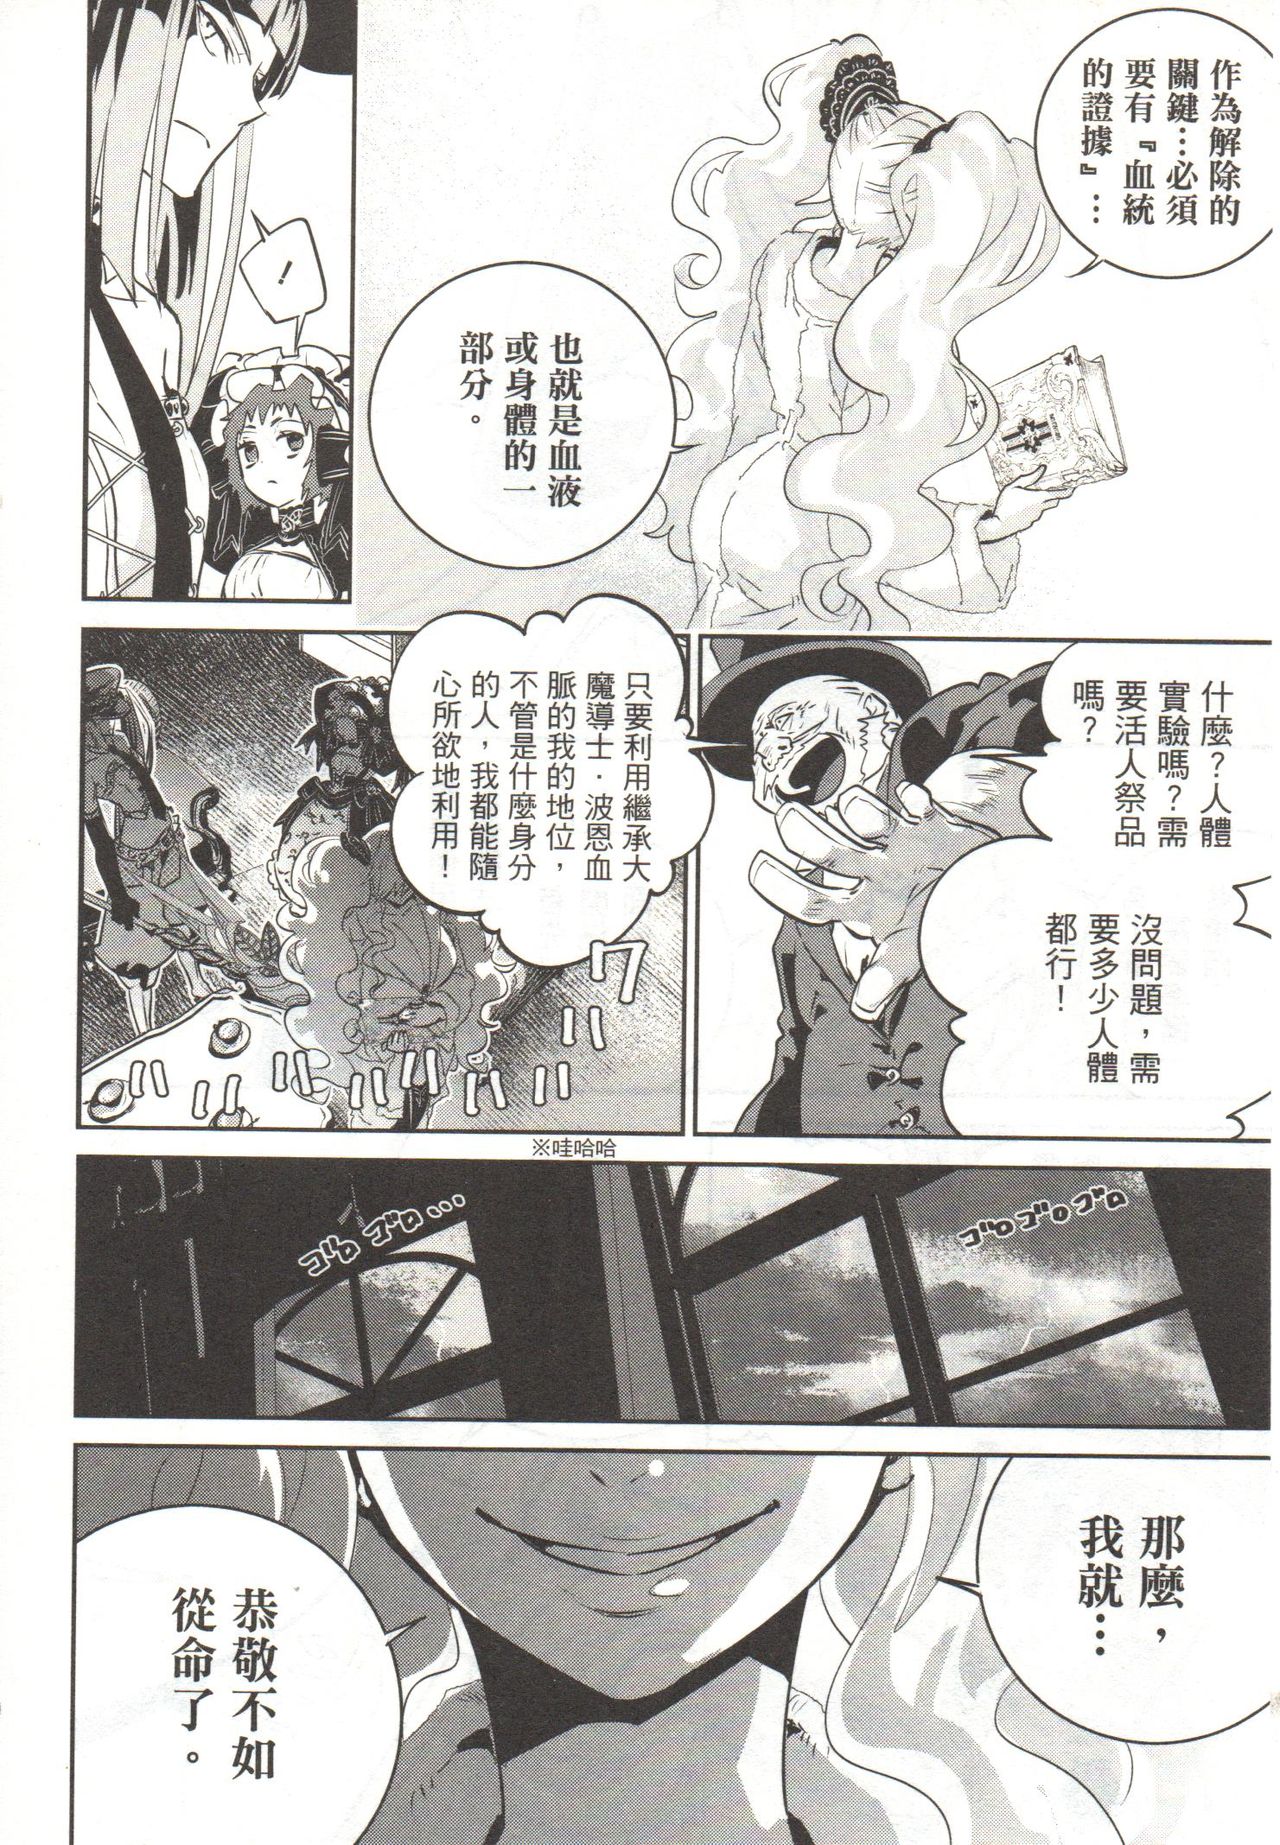 [Kameya Itsuki] Final Fantasy Lost Stranger Vol.03 [Chinese] [亀屋樹] ファイナルファンタジー ロスト・ストレンジャー 第3卷 [中国翻訳]